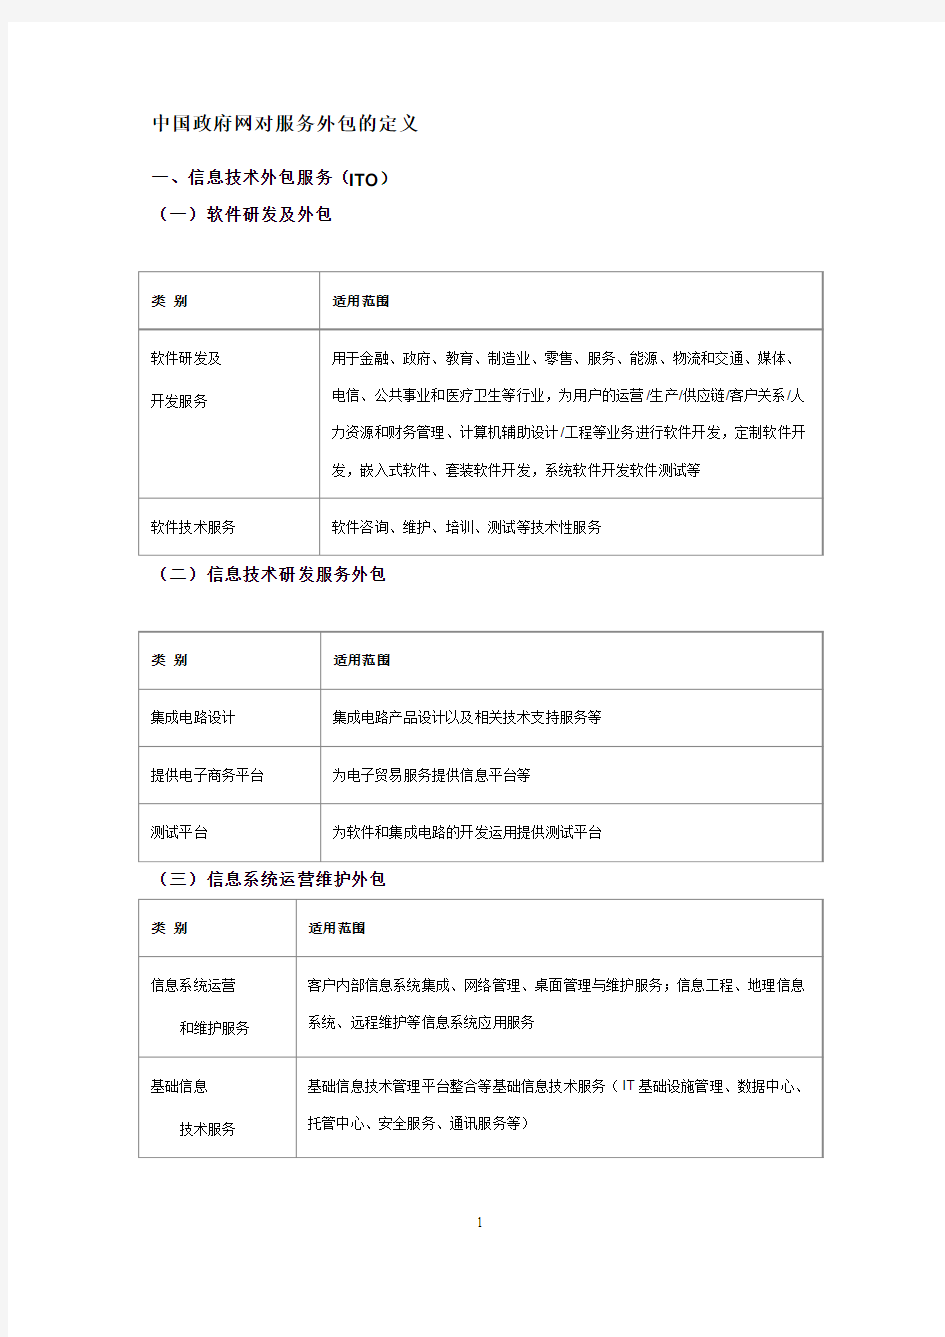 中国政府网对服务外包的定义